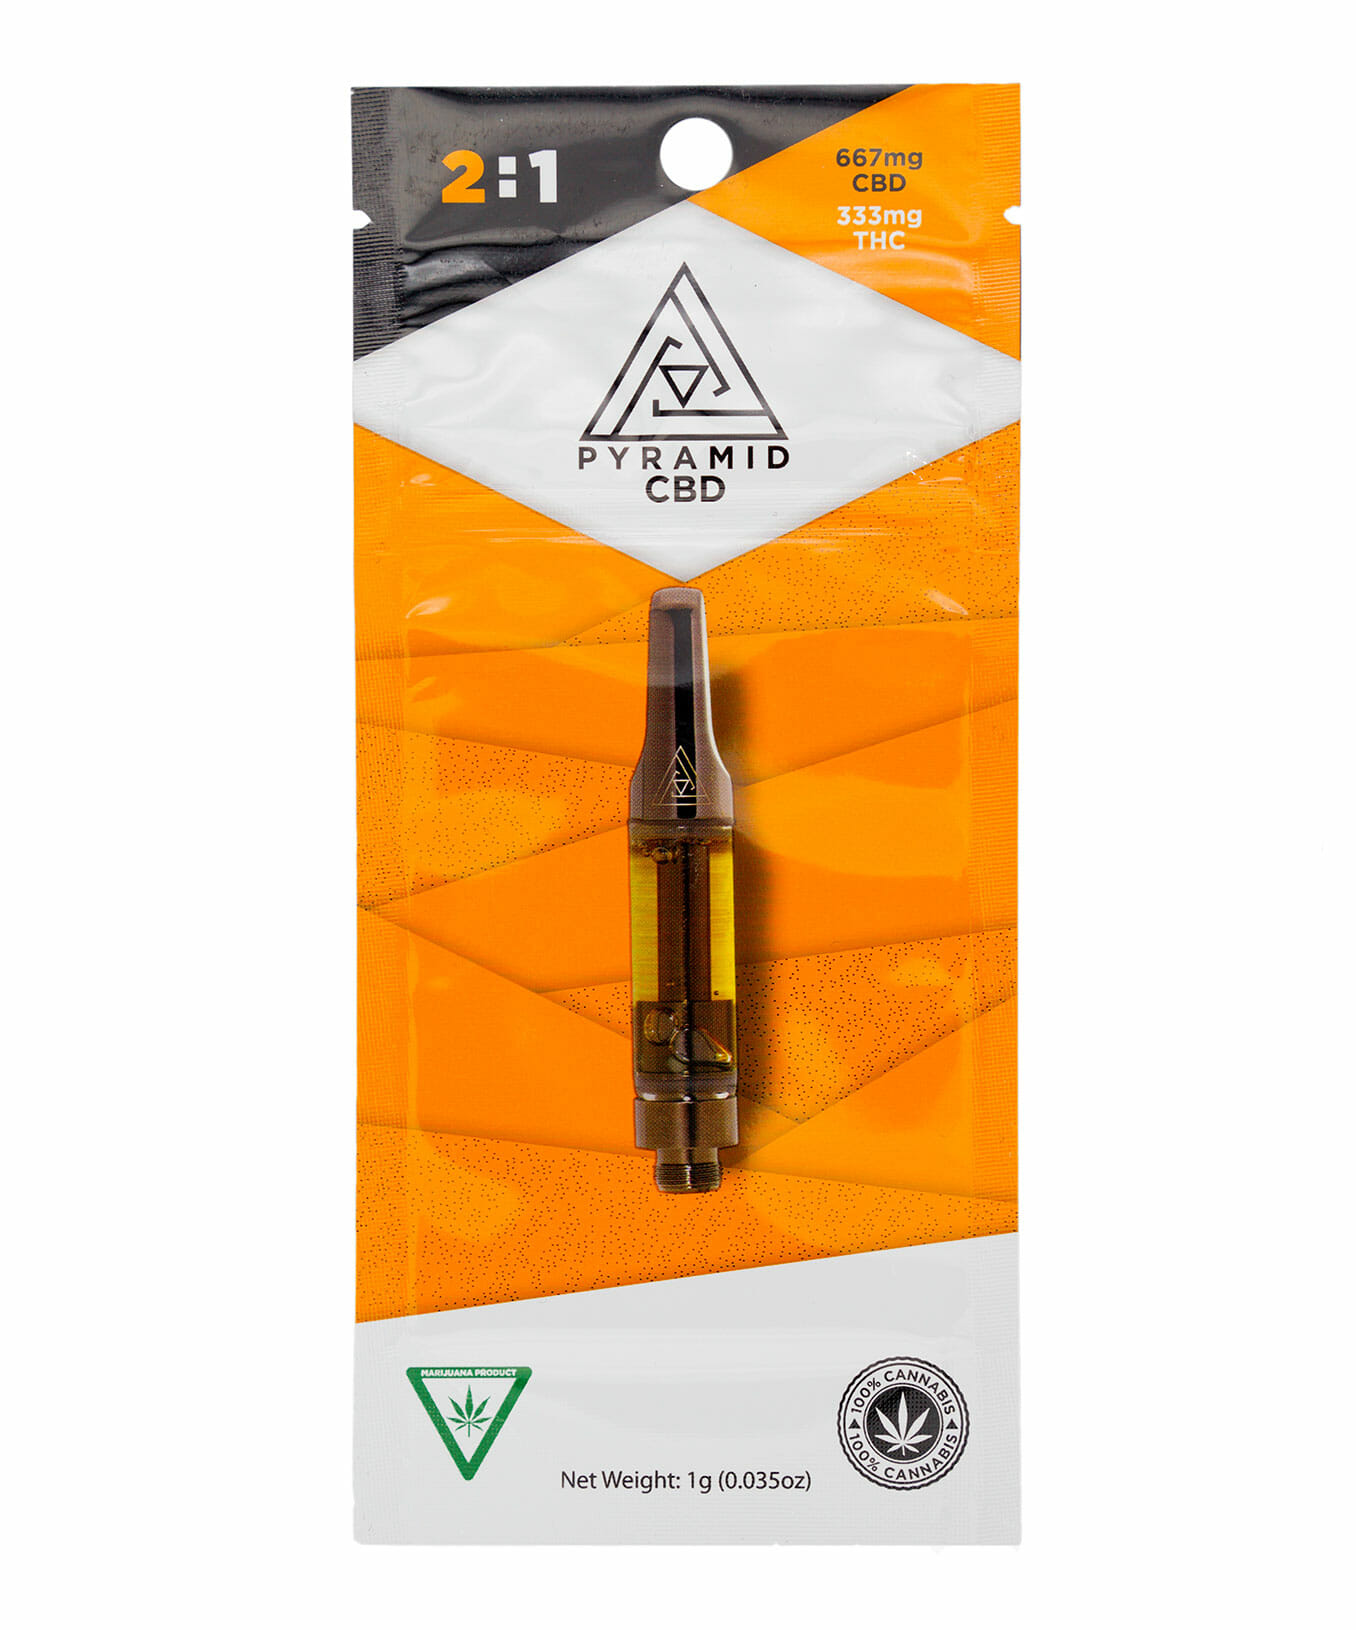 2:1 Pyramid CBD/THC cartridge